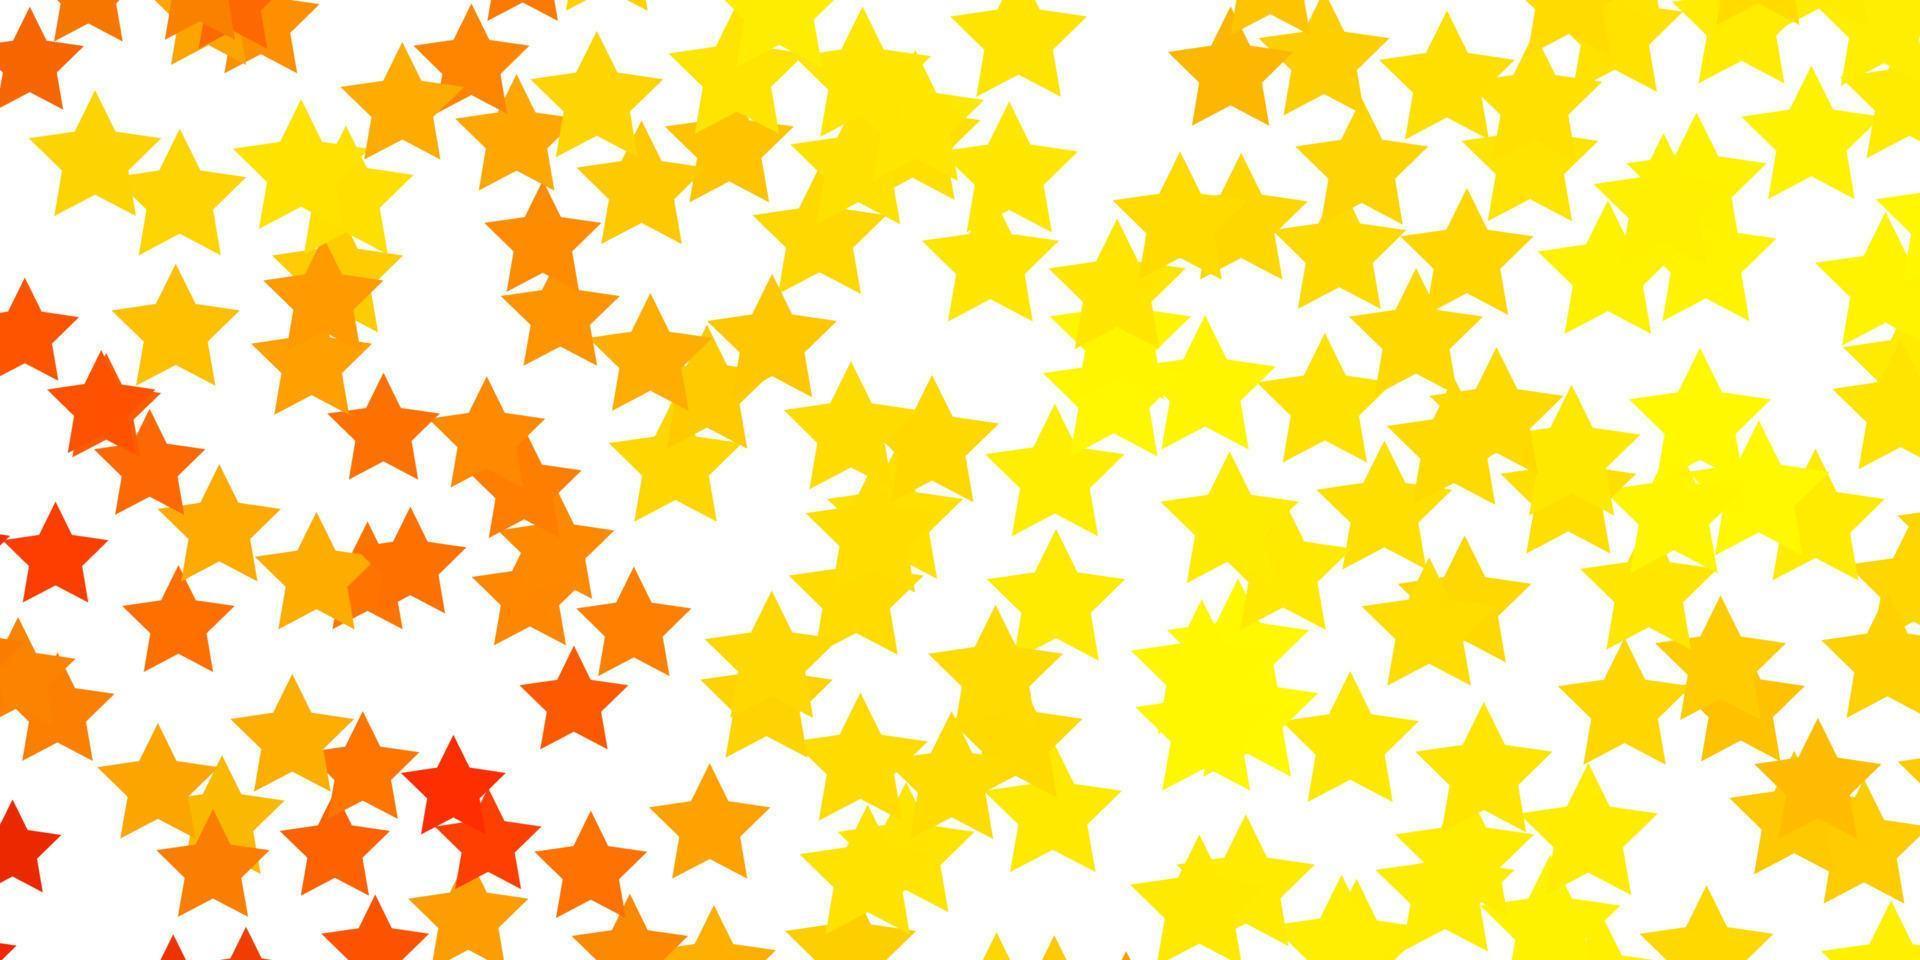 padrão de vetor amarelo claro com estrelas abstratas.